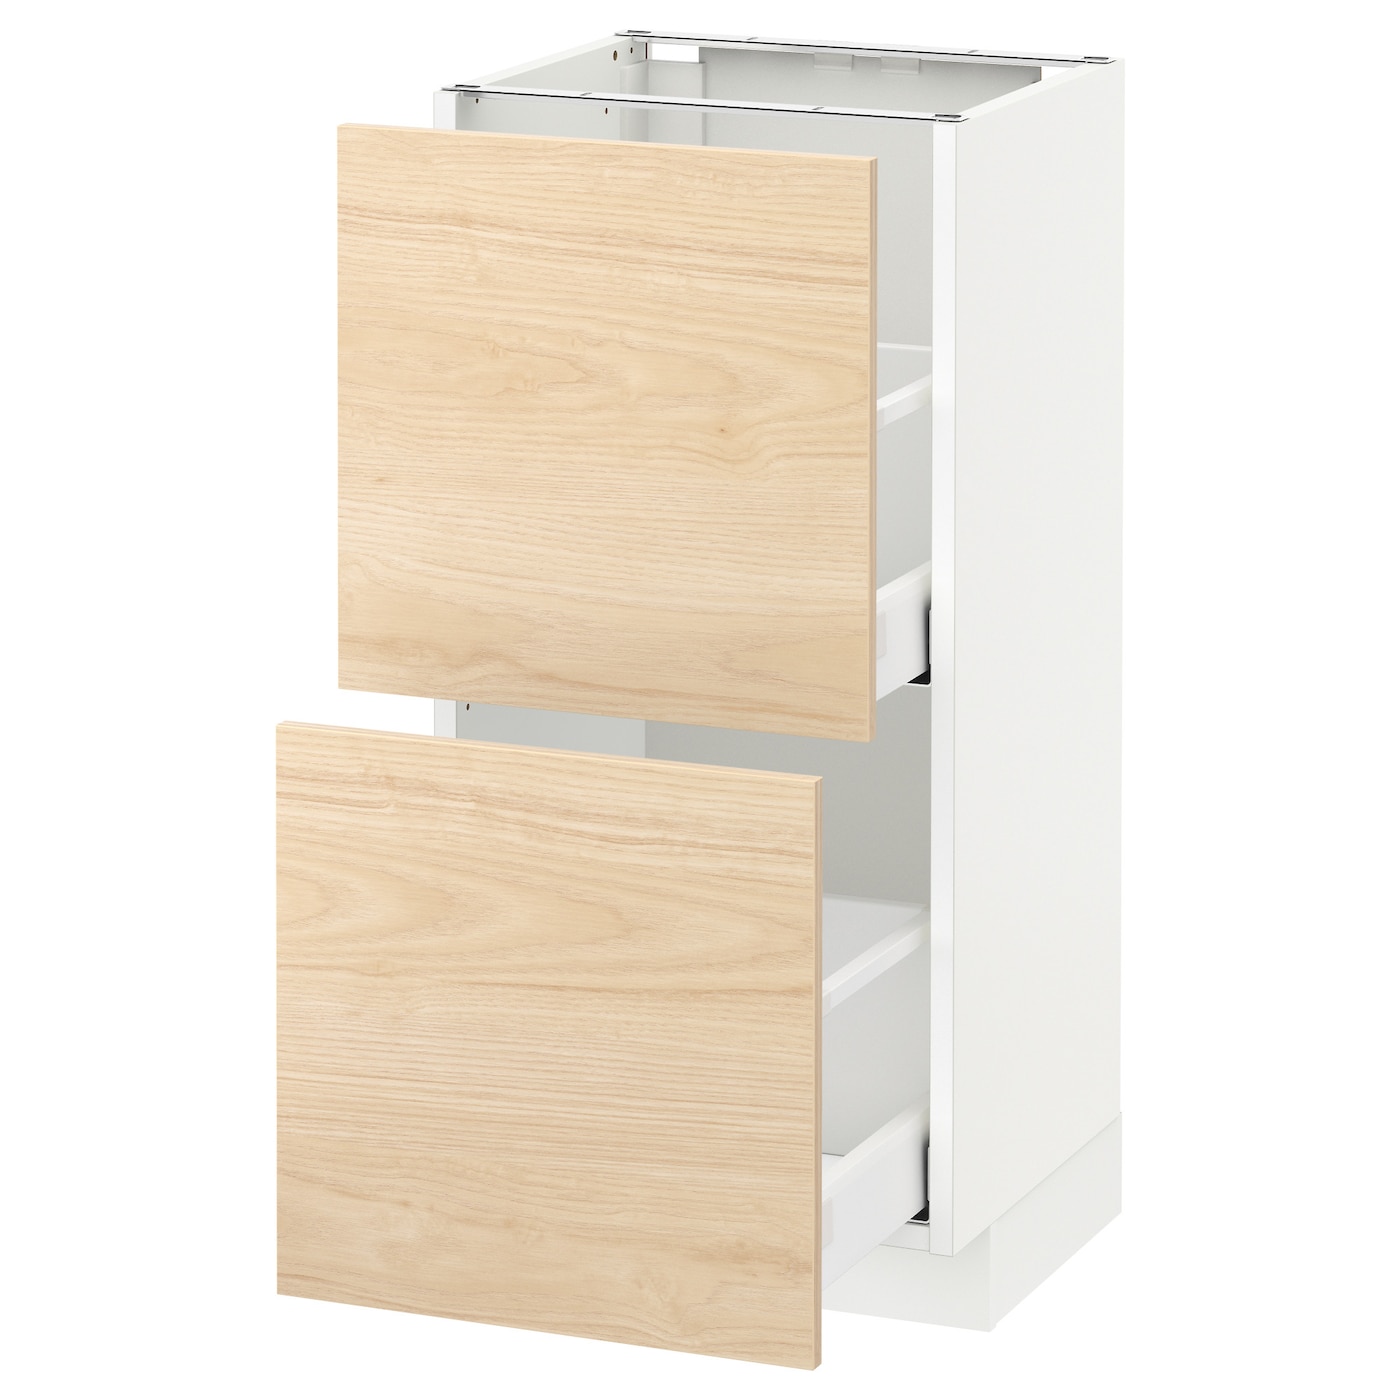 Напольный кухонный шкаф  - IKEA METOD MAXIMERA, 88x39x40см, белый/светлый бамбук, МЕТОД МАКСИМЕРА ИКЕА